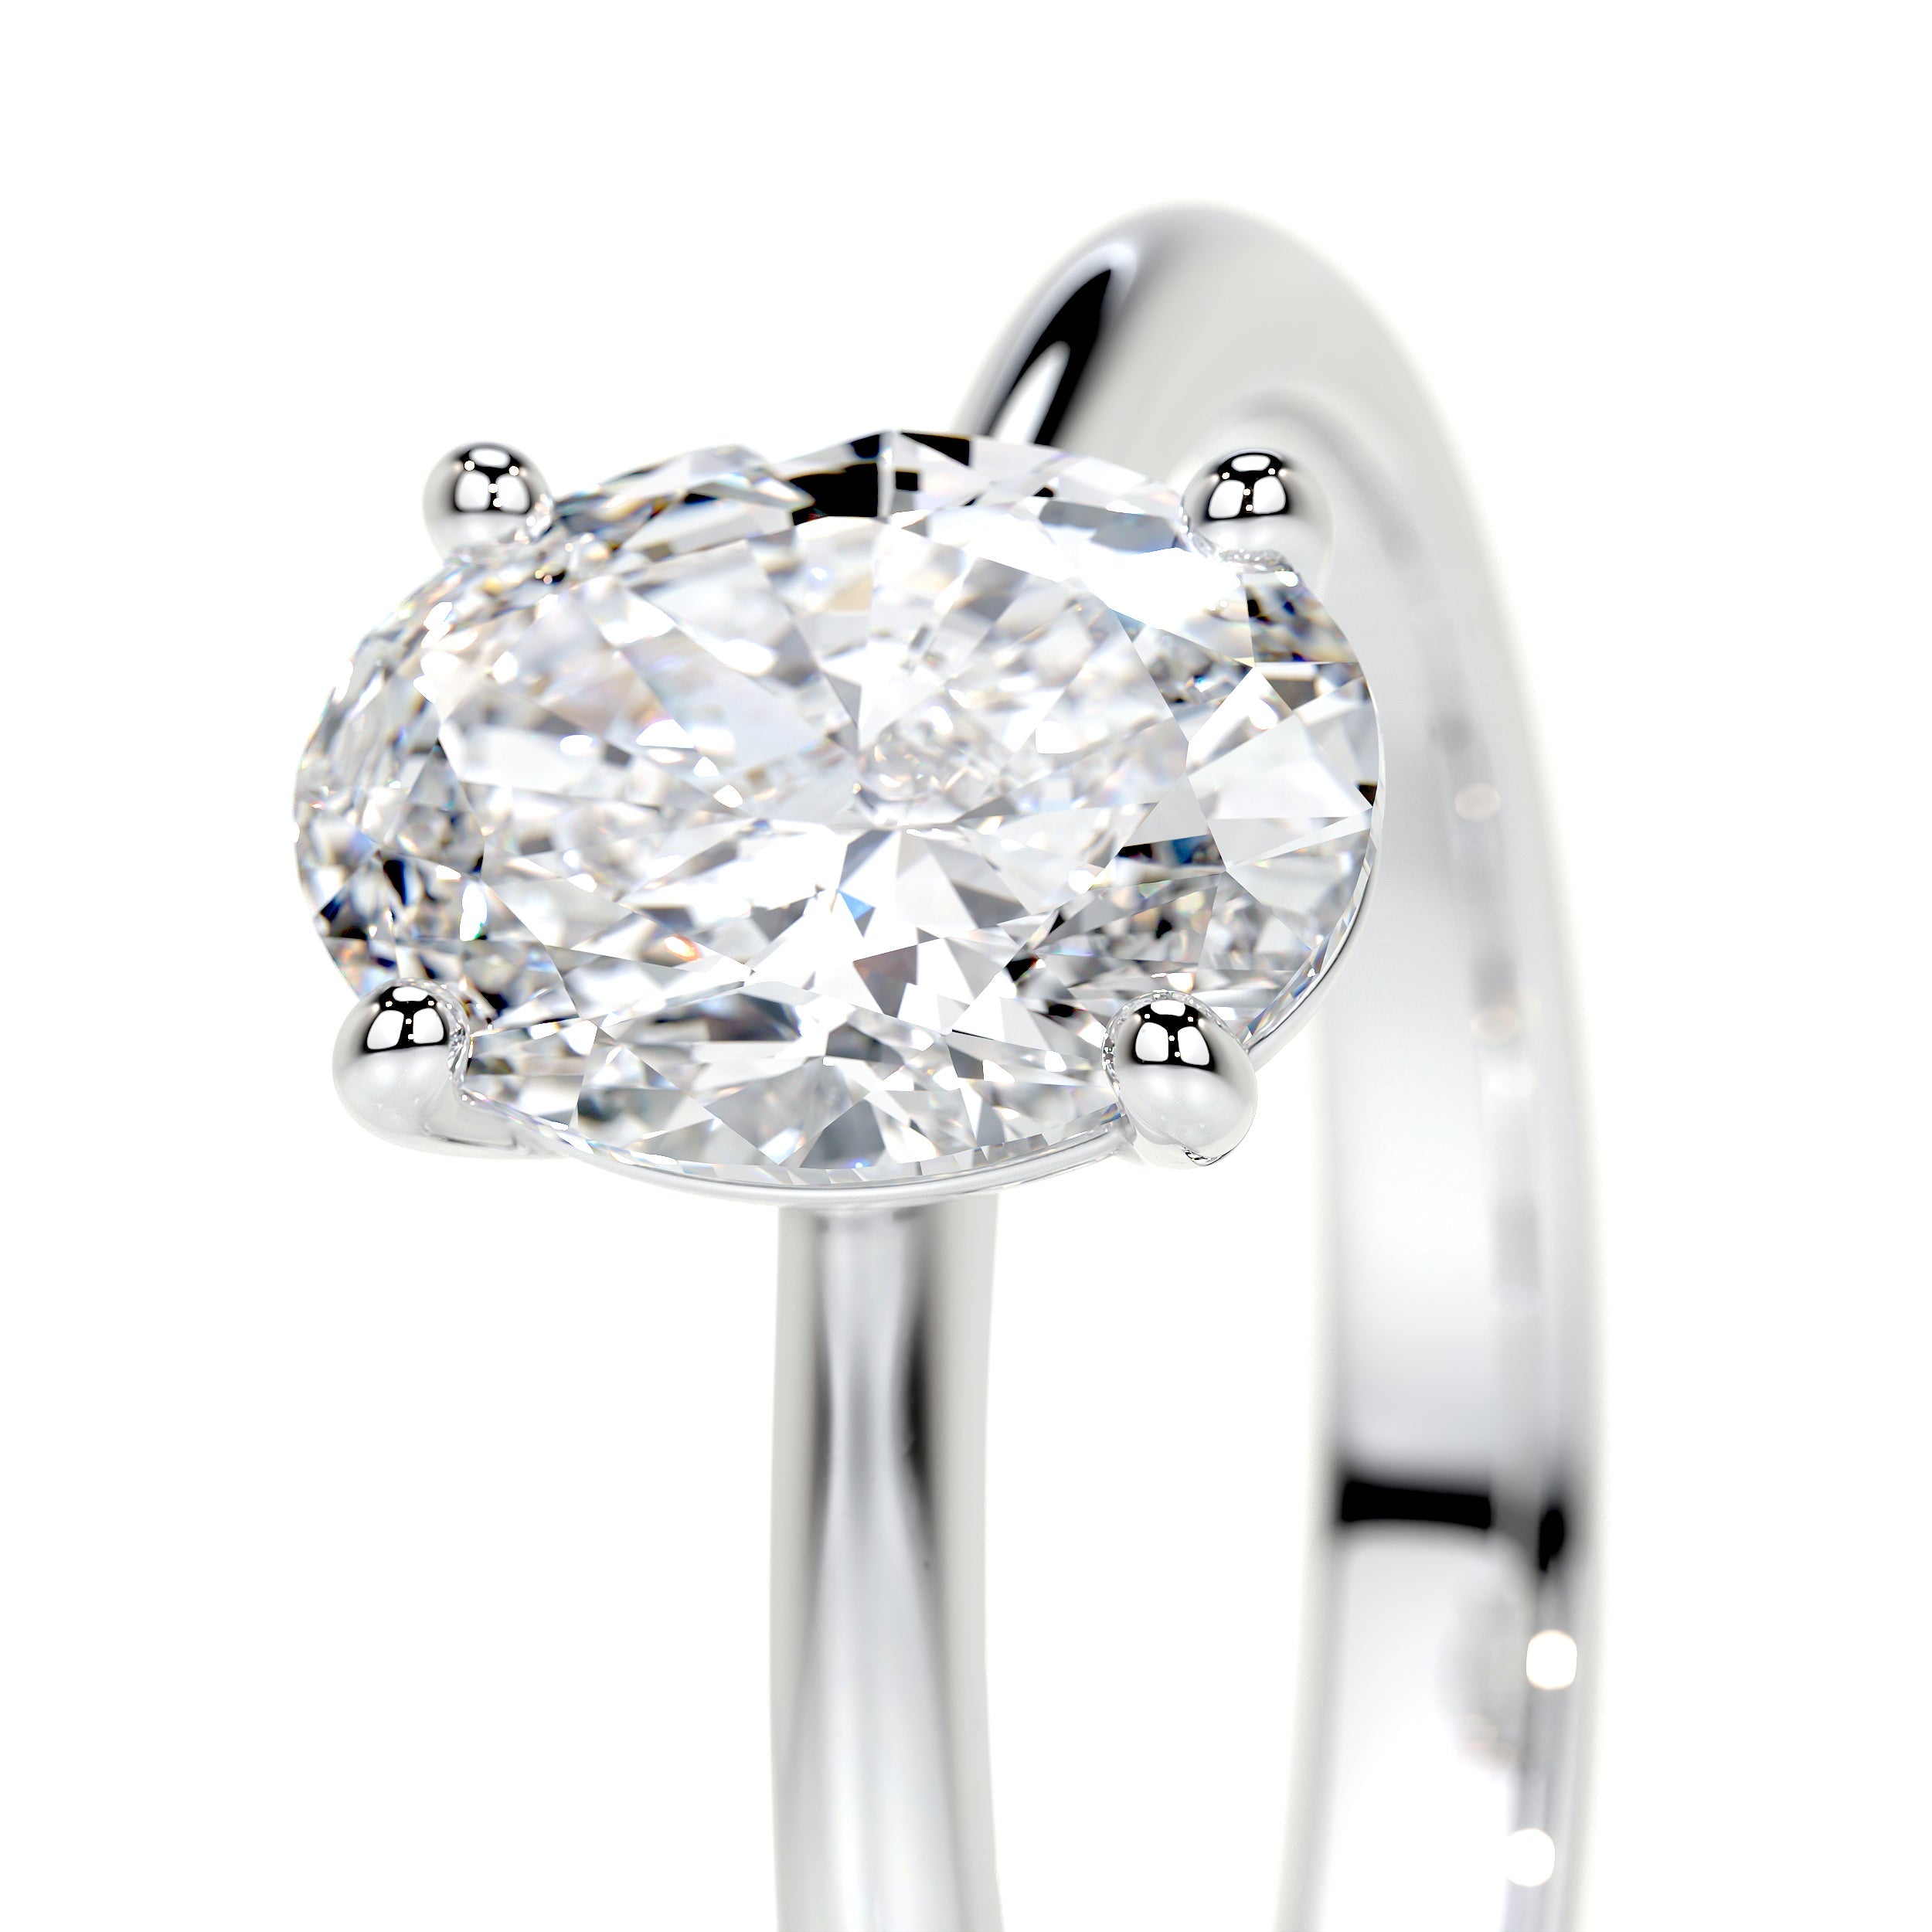 Julia Lab Grown Diamond Ring   (1 Carat) -14K White Gold